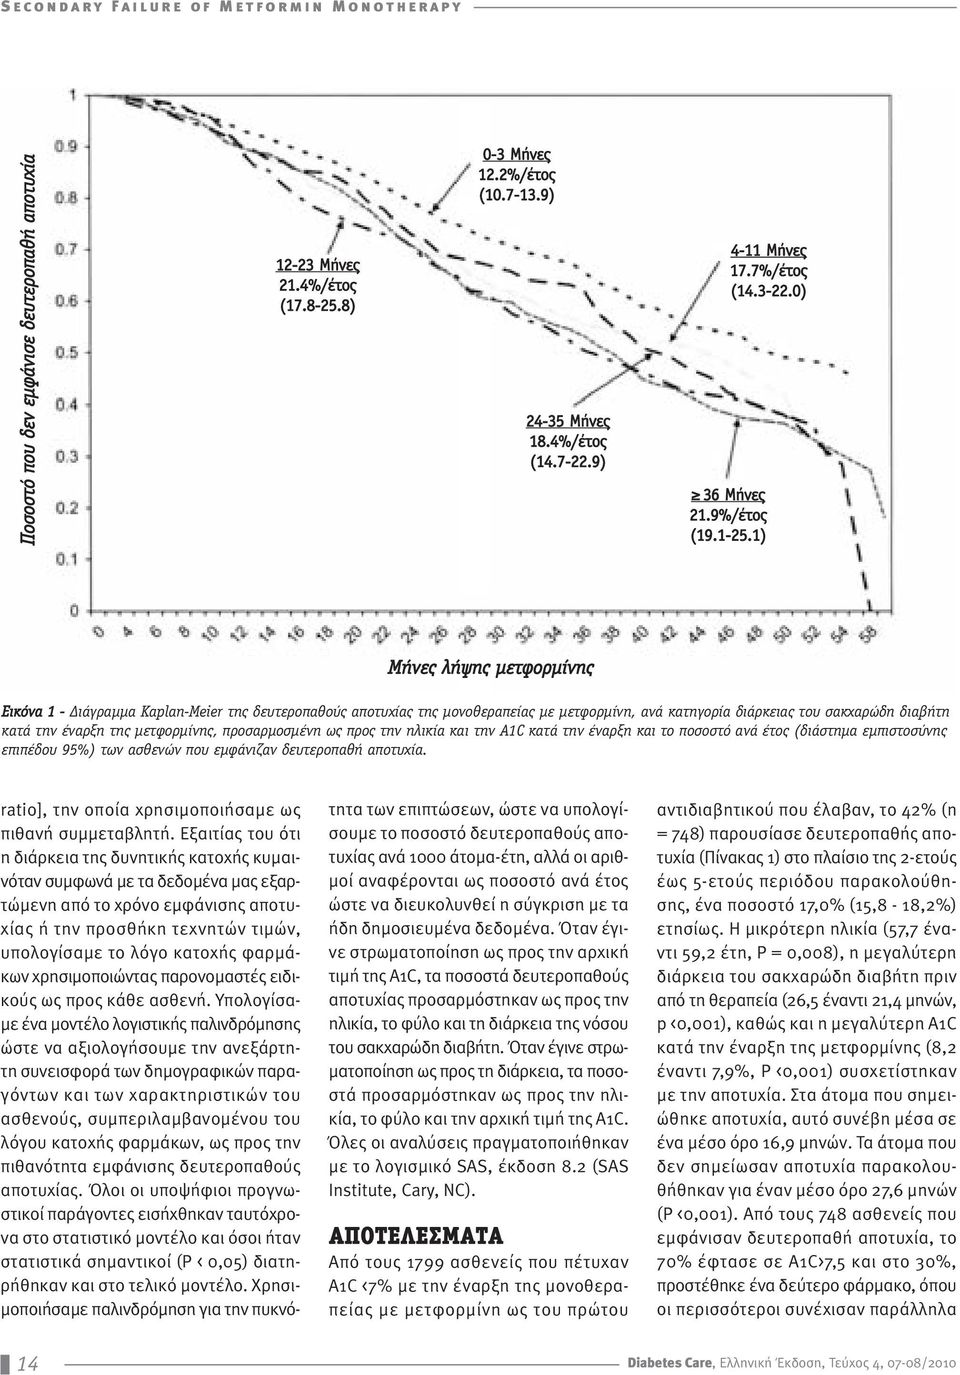 1) Μήνες λήψης μετφορμίνης Εικόνα 1 - Διάγραμμα Kaplan-Meier της δευτεροπαθούς αποτυχίας της μονοθεραπείας με μετφορμίνη, ανά κατηγορία διάρκειας του σακχαρώδη διαβήτη κατά την έναρξη της